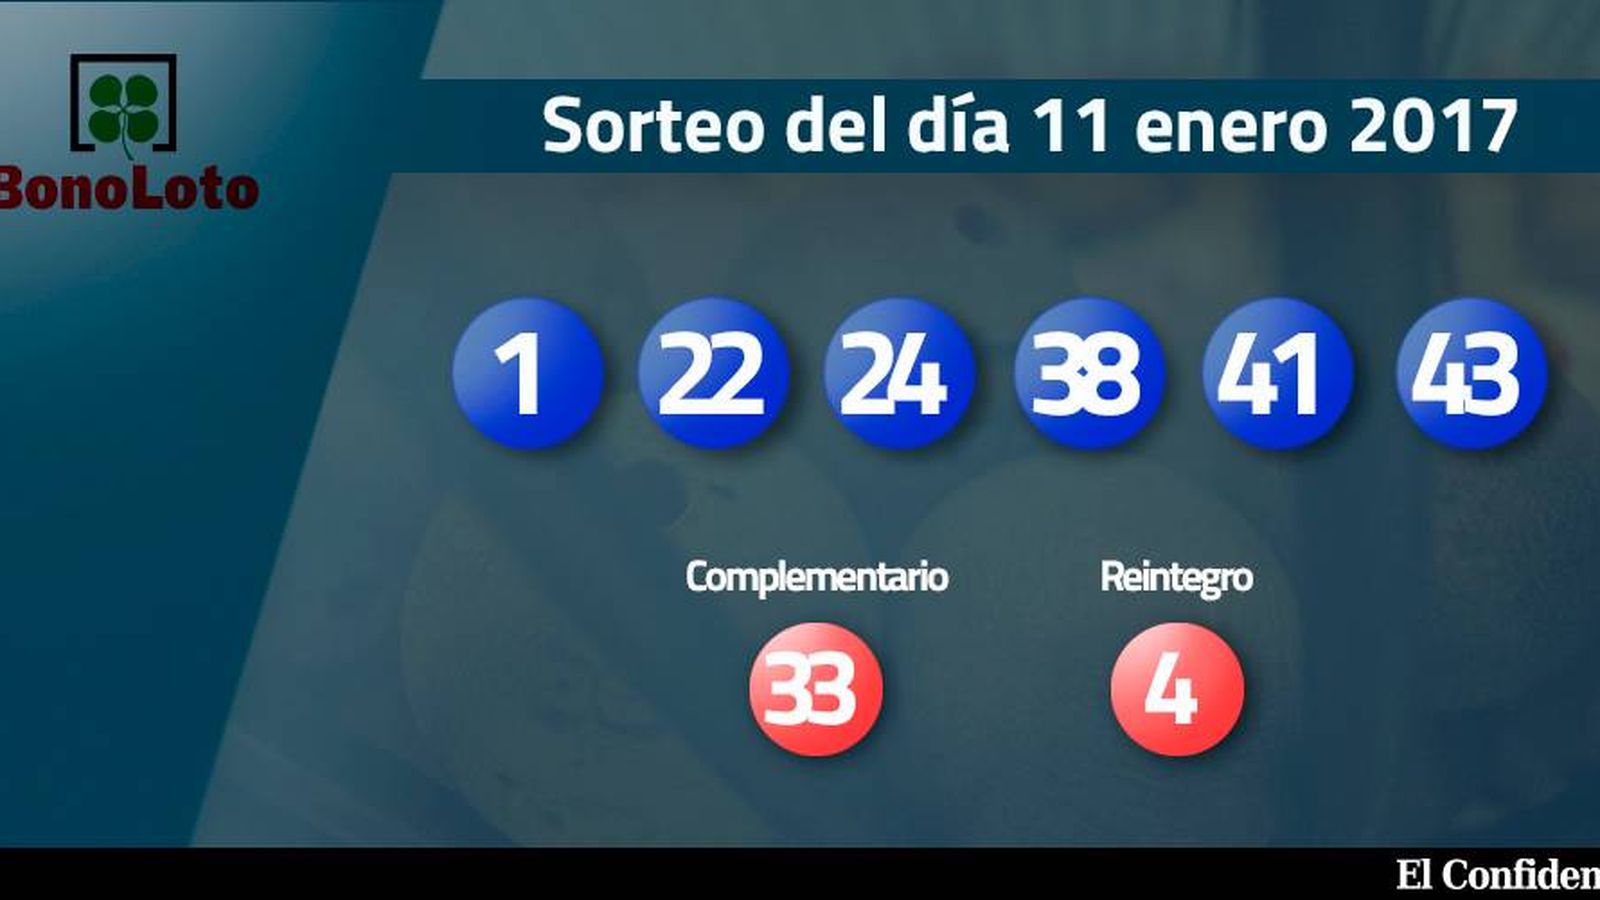 Foto: Resultados del sorteo de la Bonoloto del 11 enero 2017 (EC)